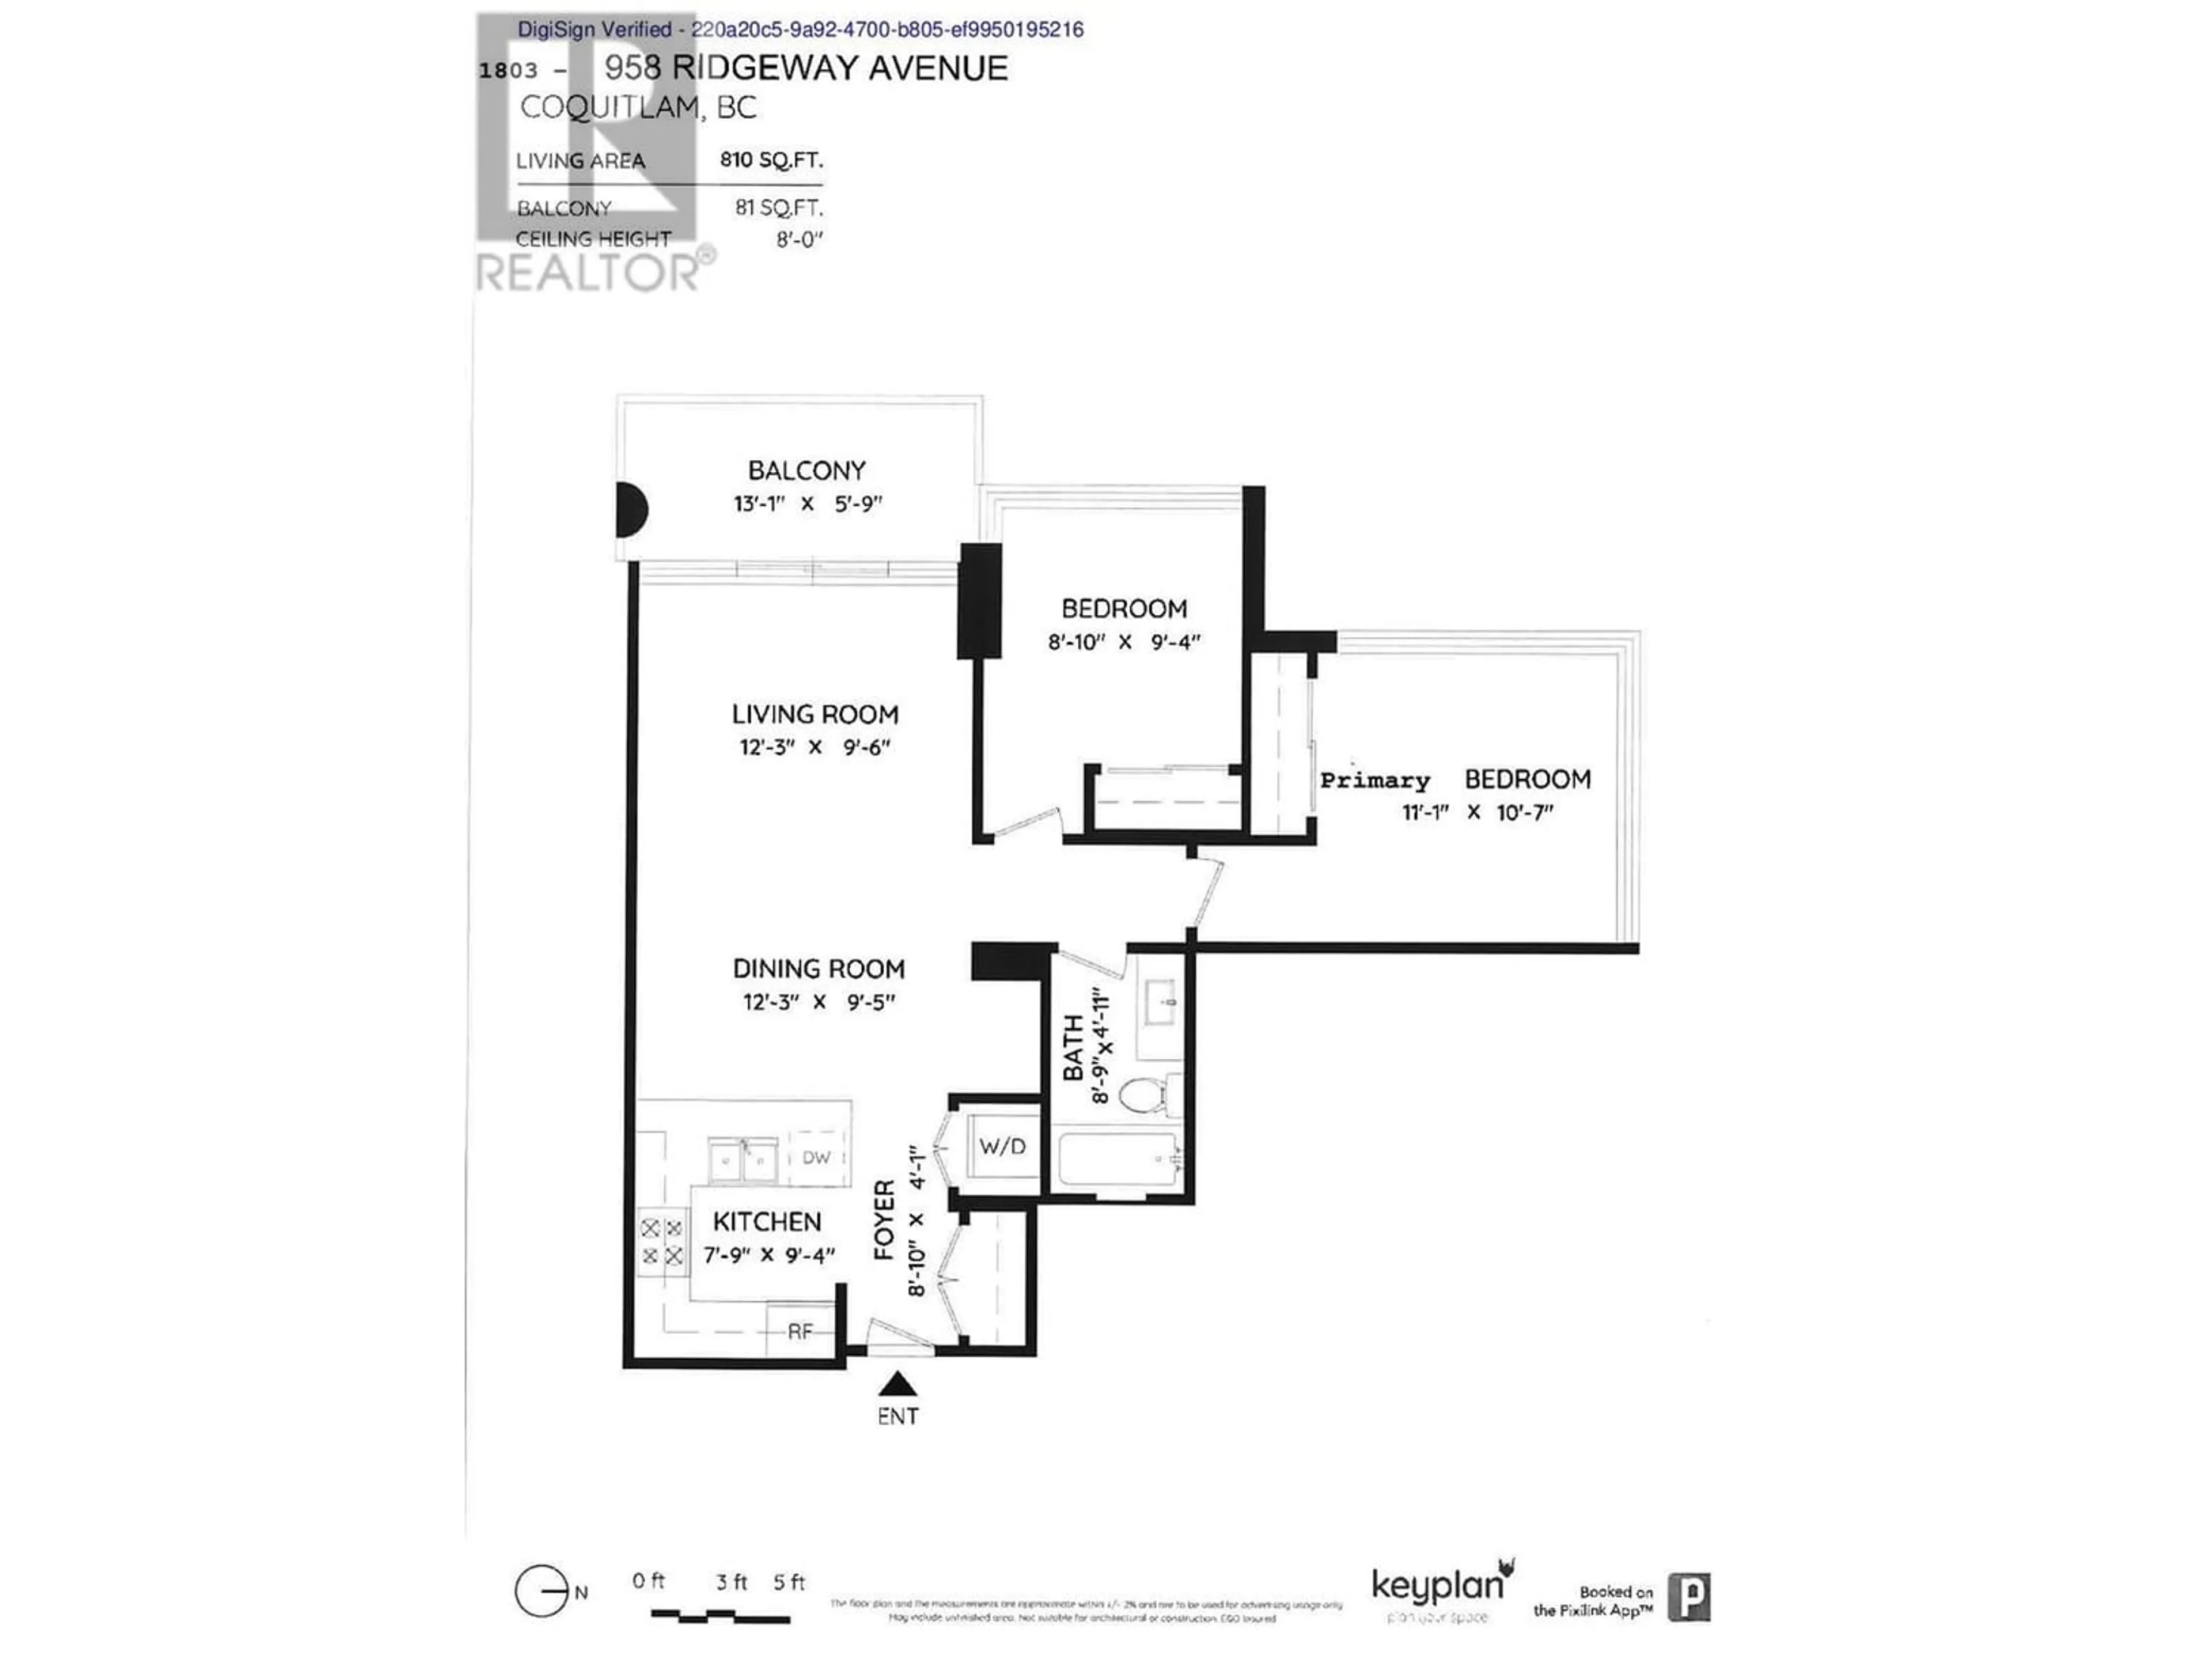 Floor plan for 1803 958 RIDGEWAY AVENUE, Coquitlam British Columbia V3K0C5